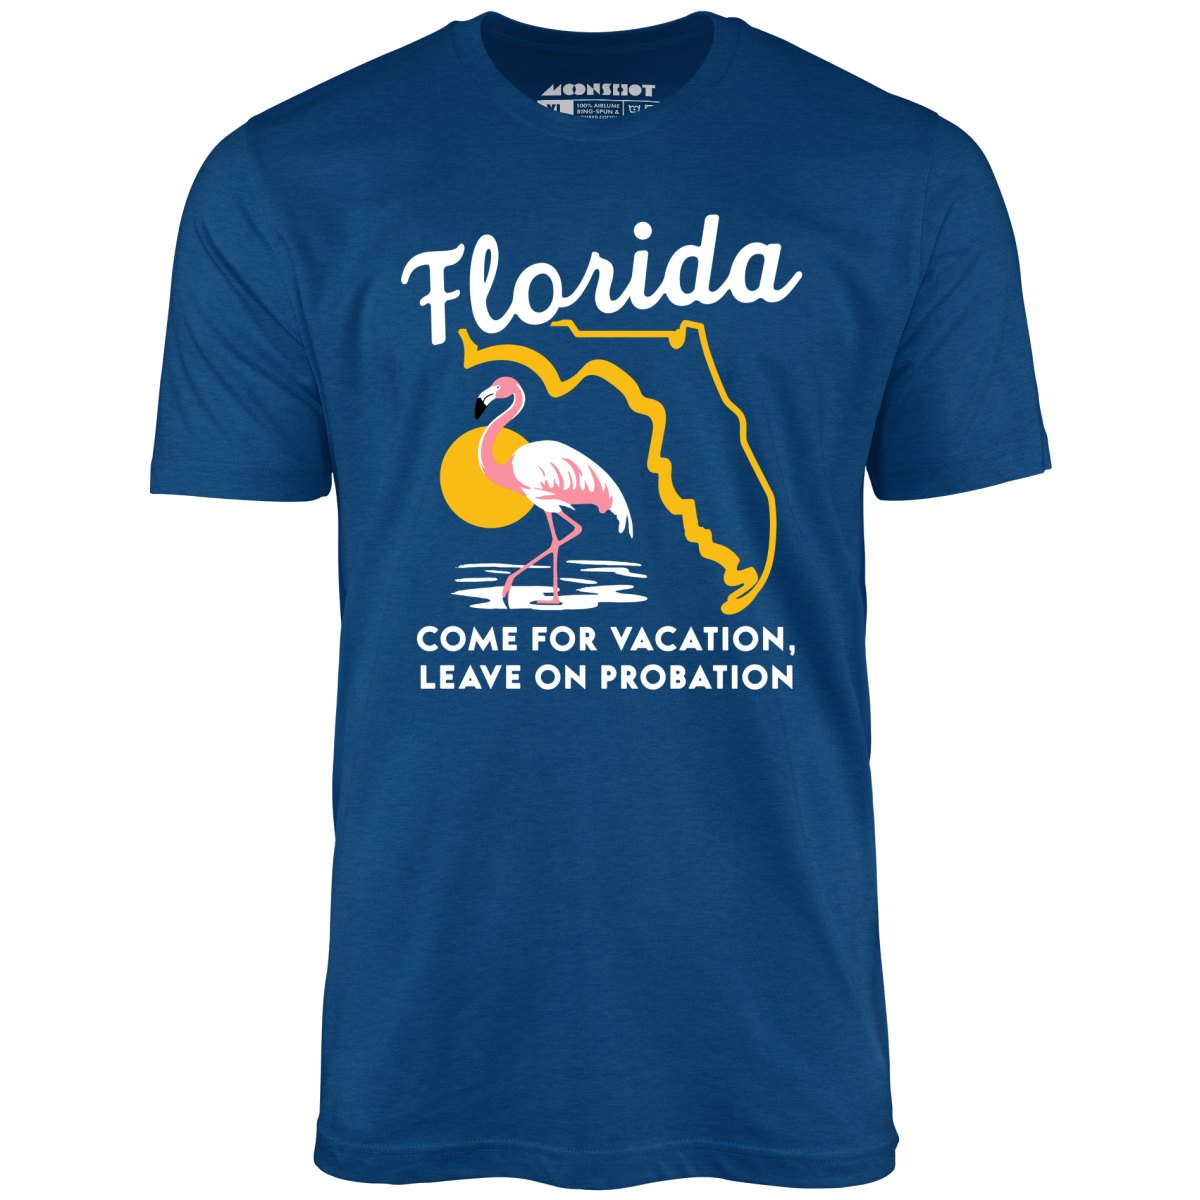 Florida Travel - Unisex T-Shirt